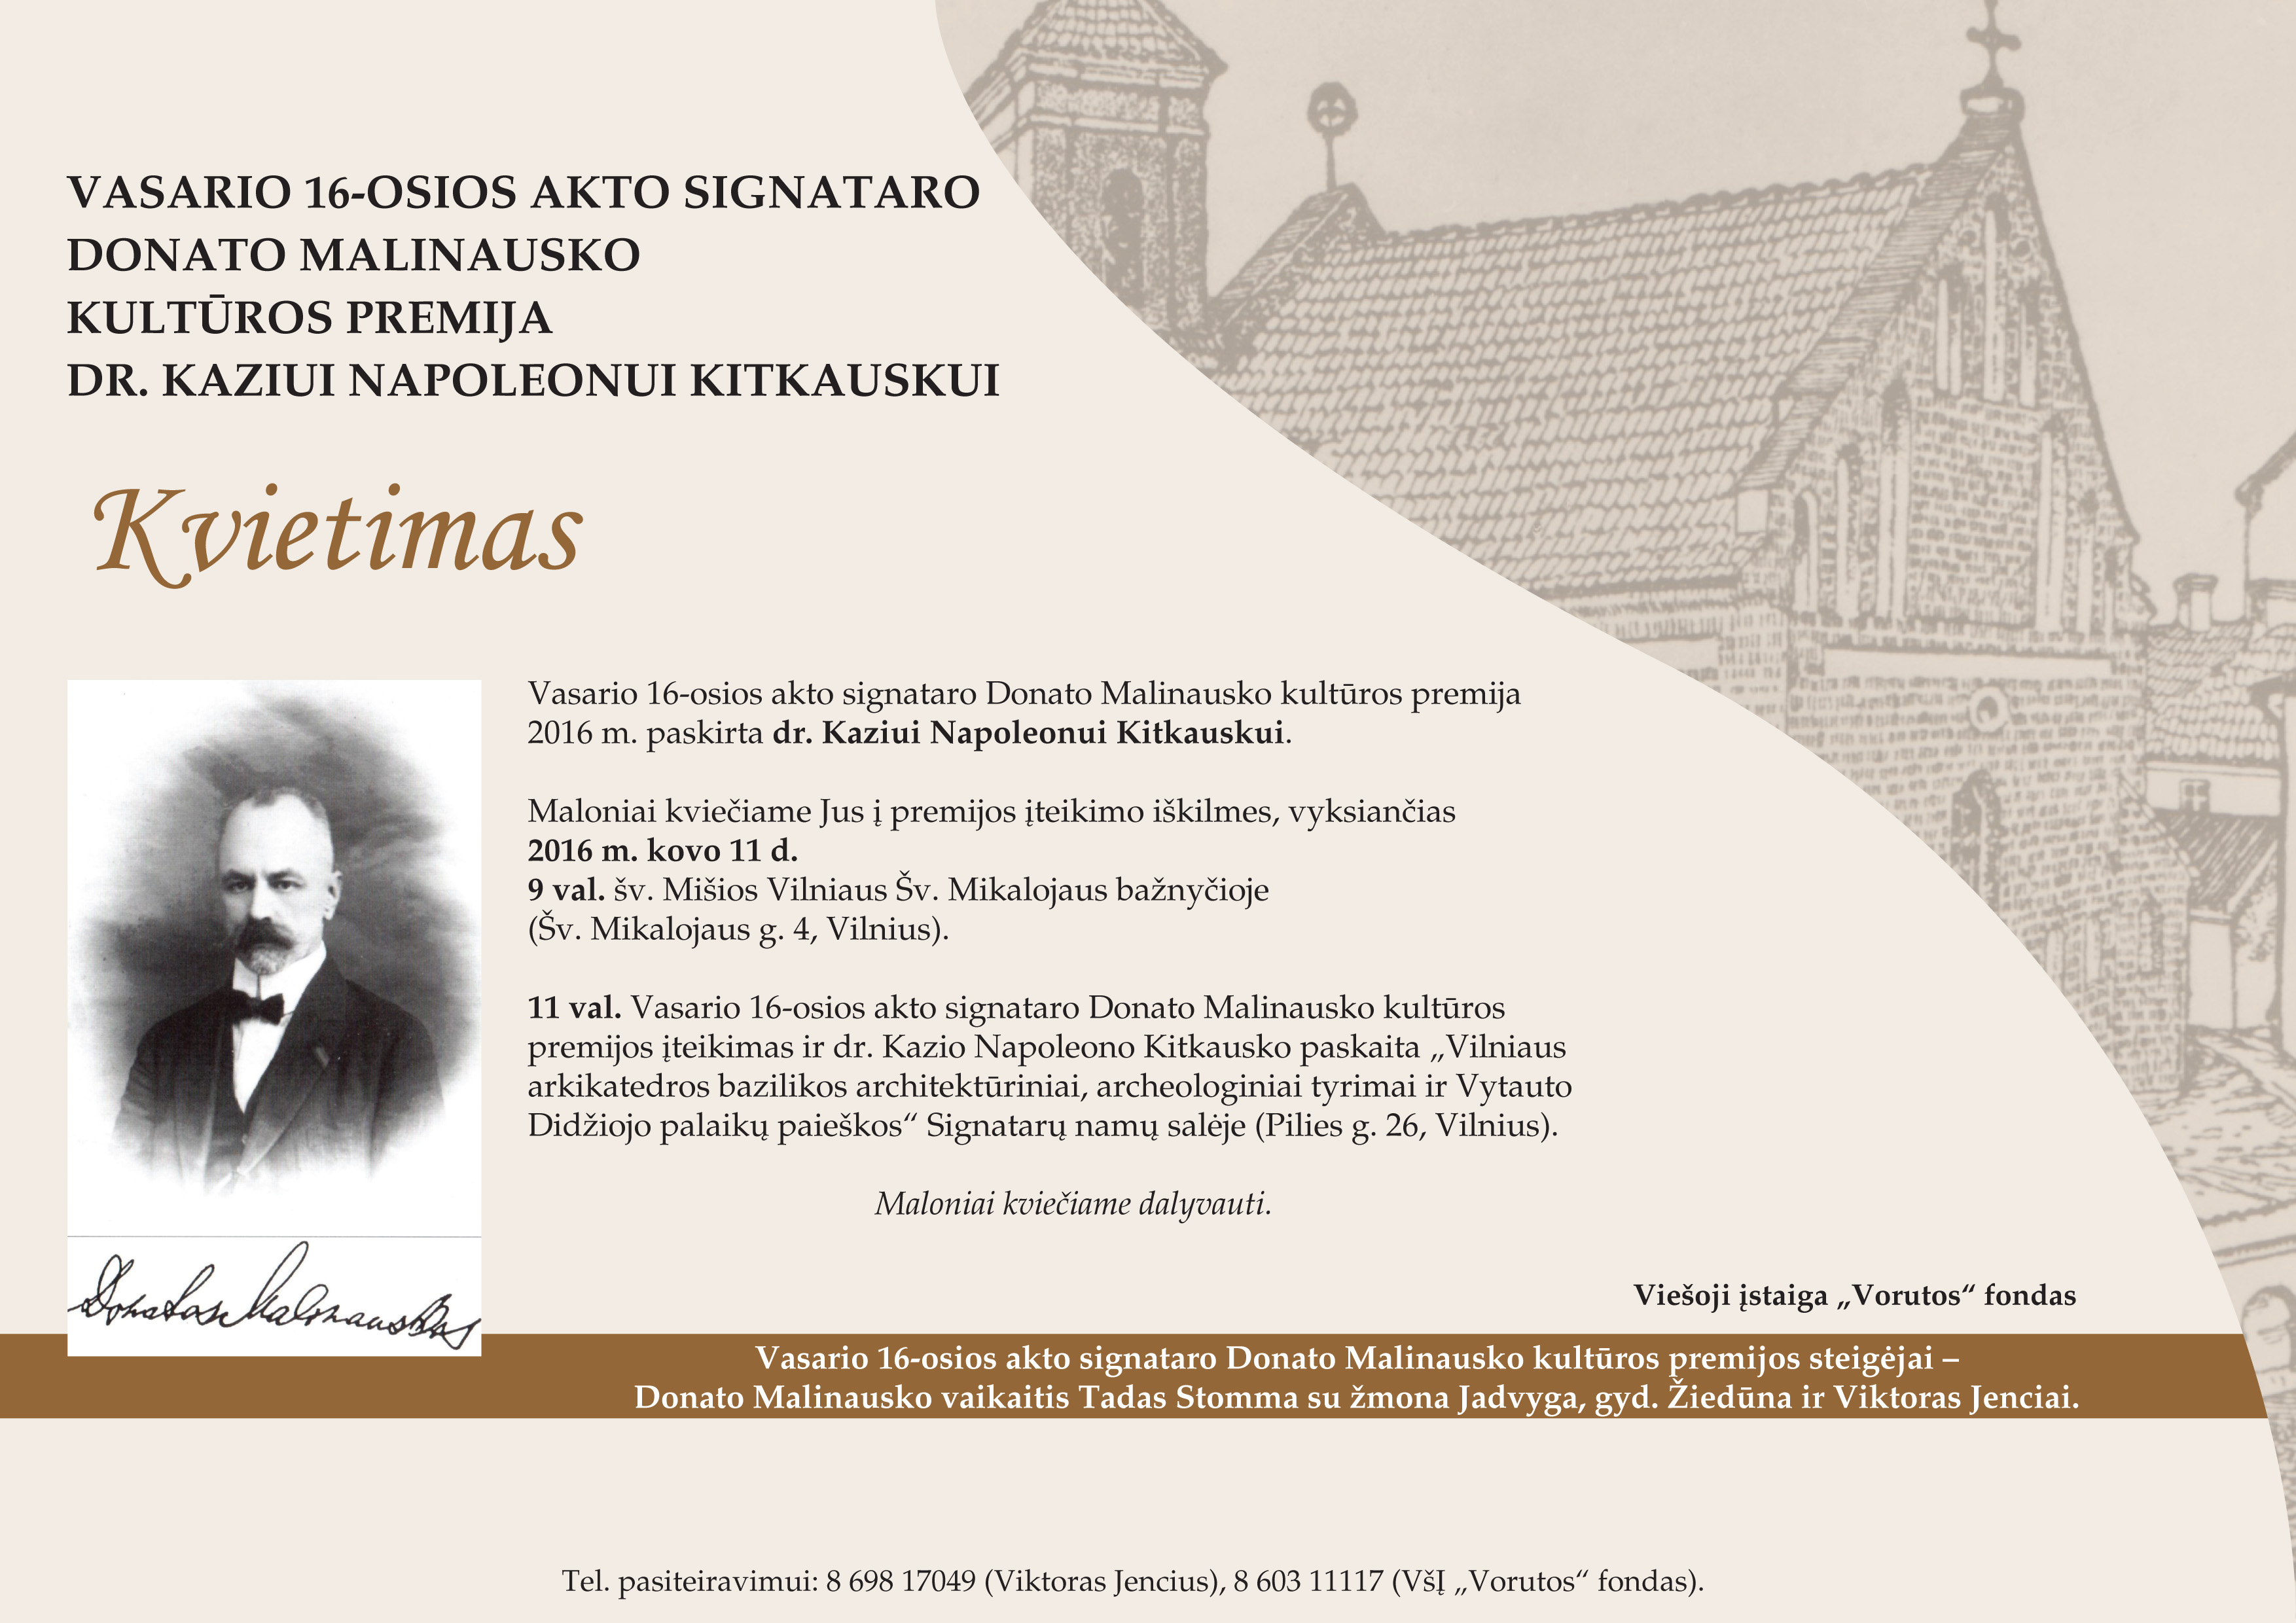 Vasario 16-osios akto signataro Donato Malinausko kultūros premija bus įteikta dr. Kaziui Napoleonui Kitkauskui